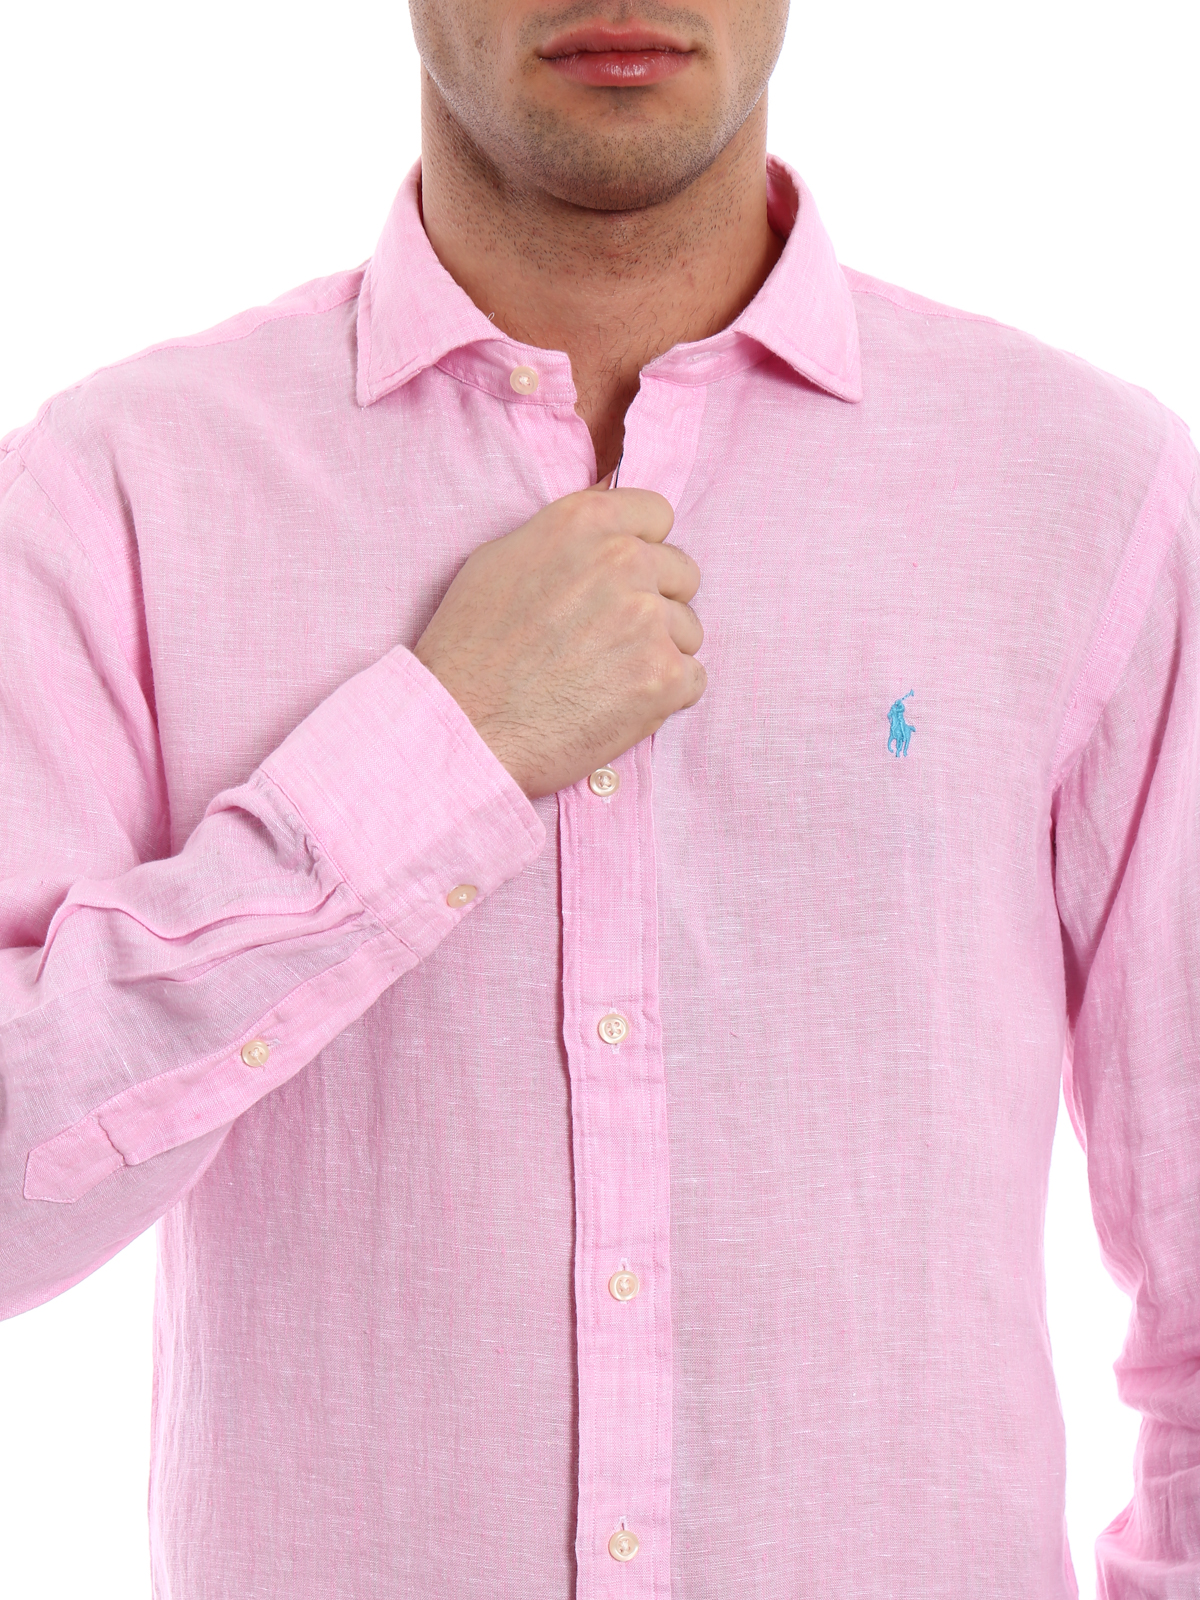 kennisgeving Extra Draaien Shirts Polo Ralph Lauren - Pure linen logo detail shirt - 710695930002